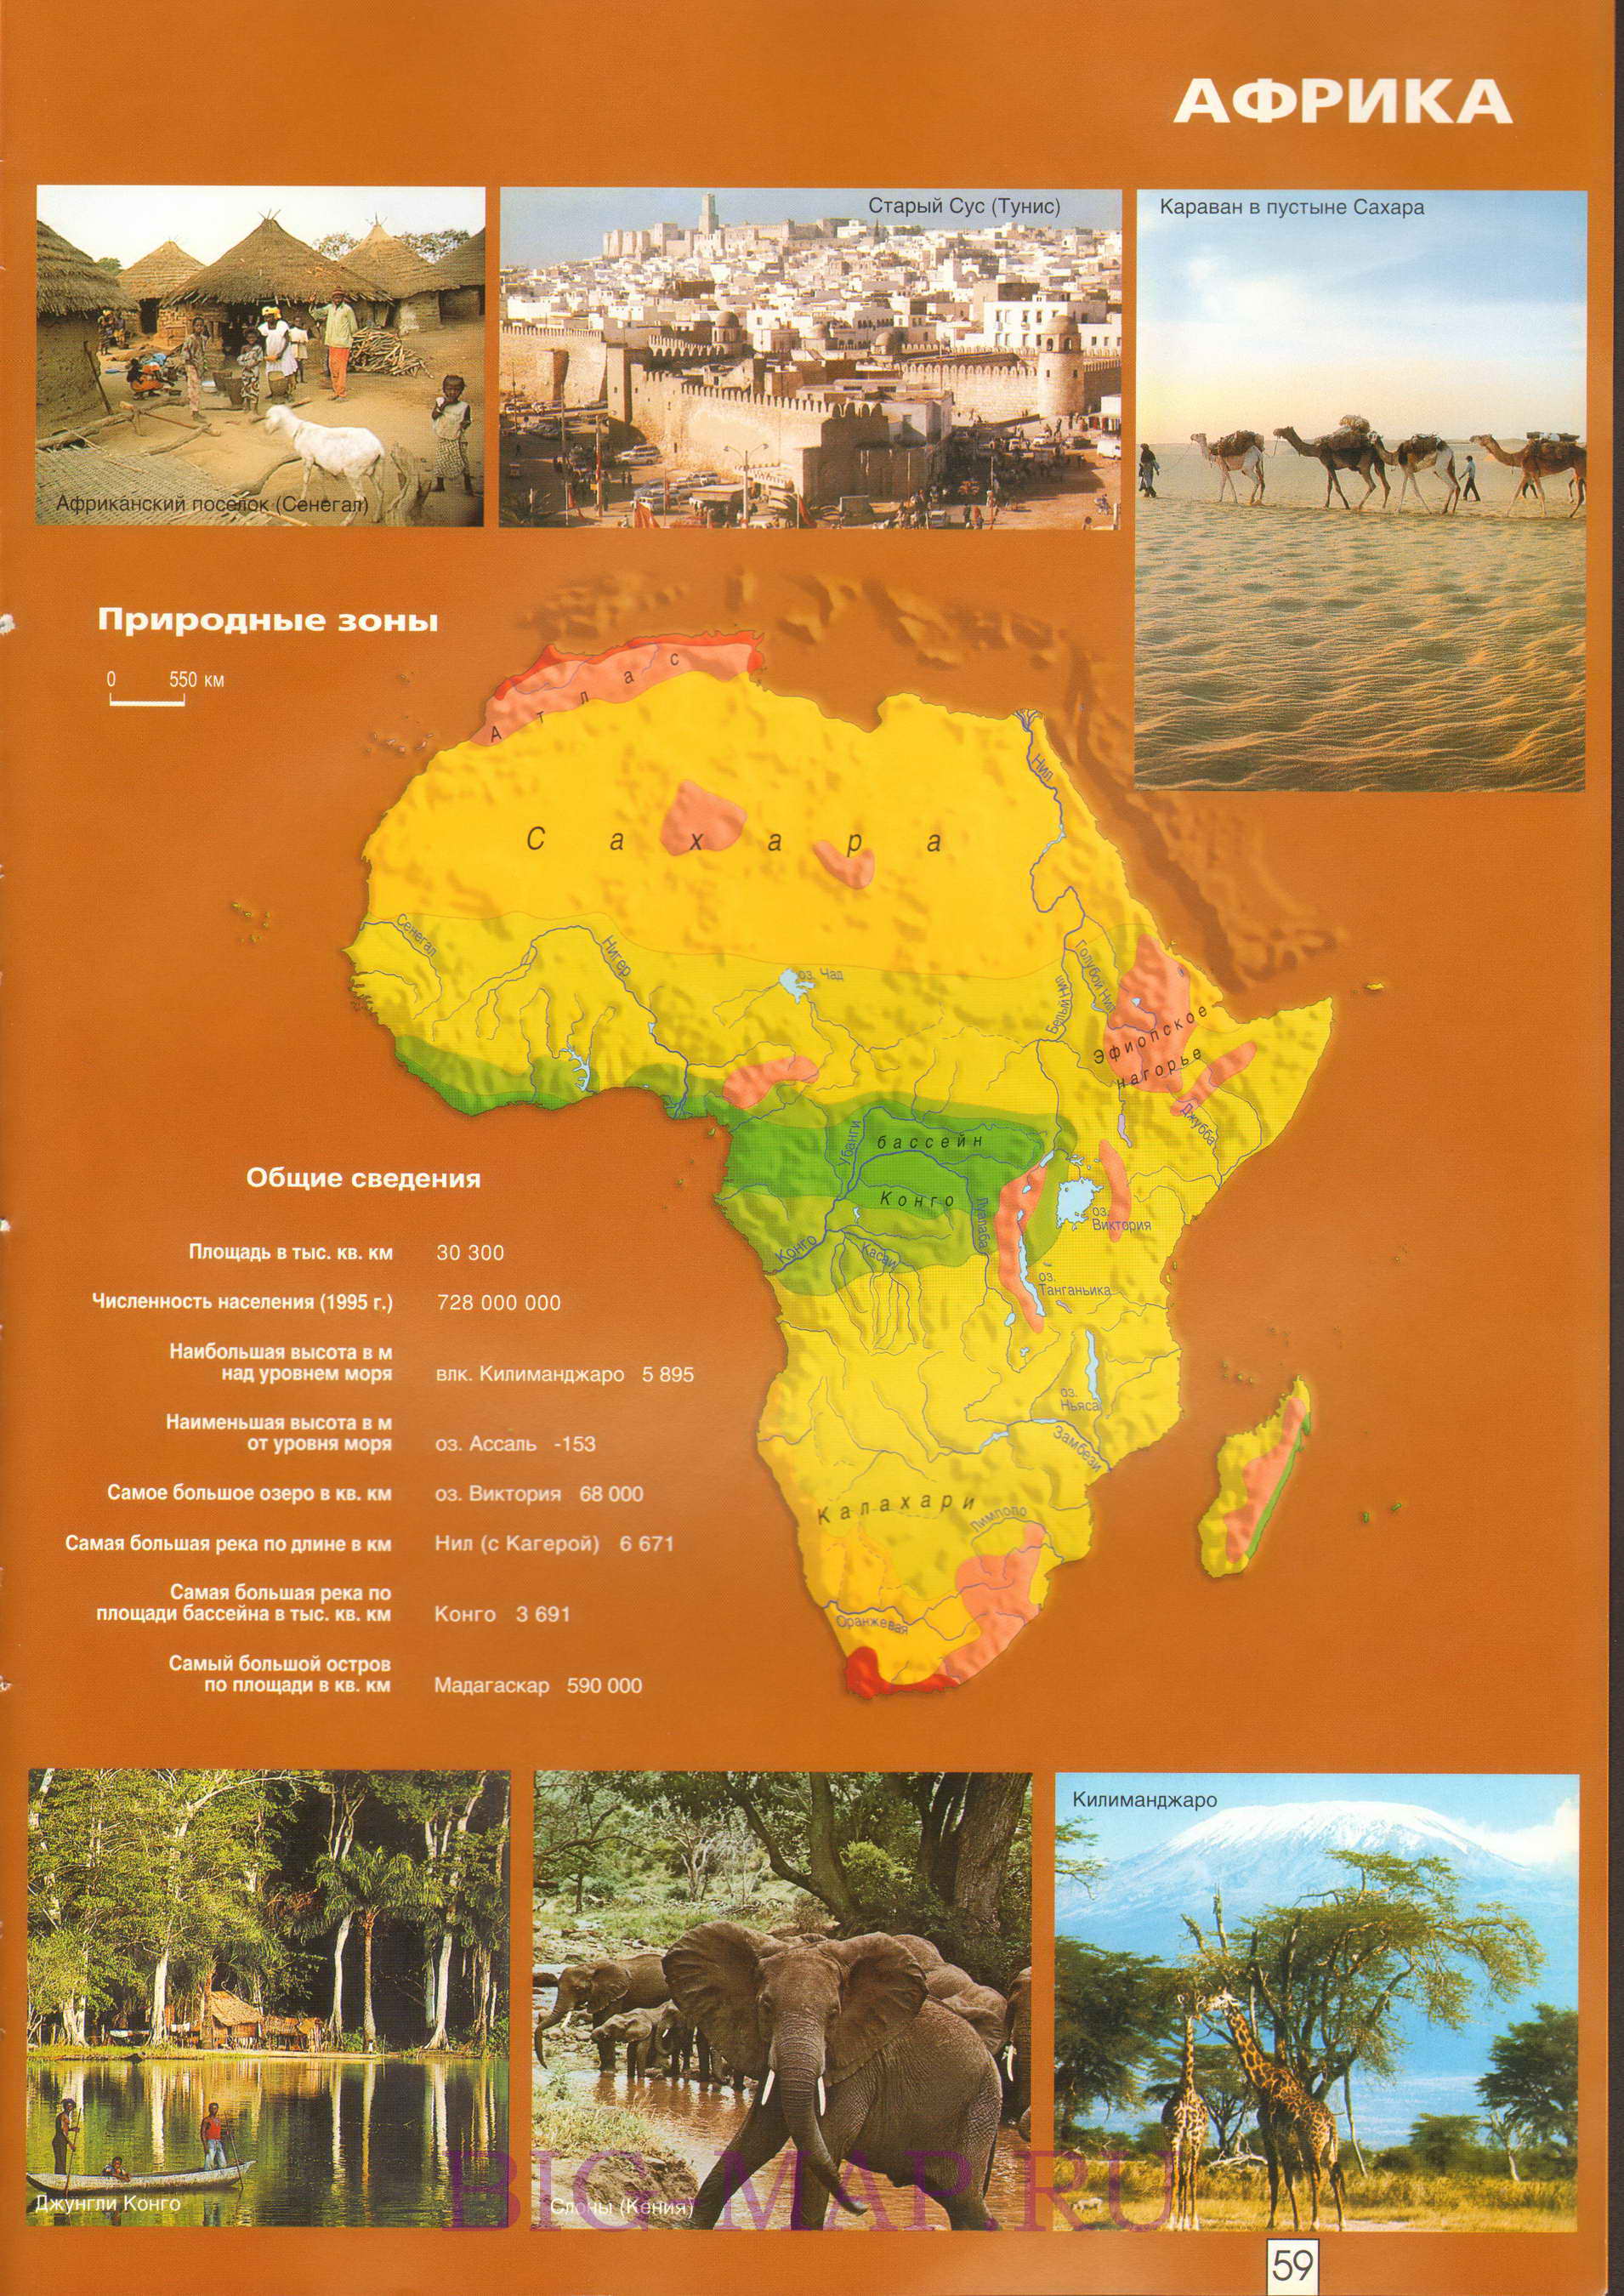 Карта природных зон Африки. Общие сведения по географии Африки, A0 - 